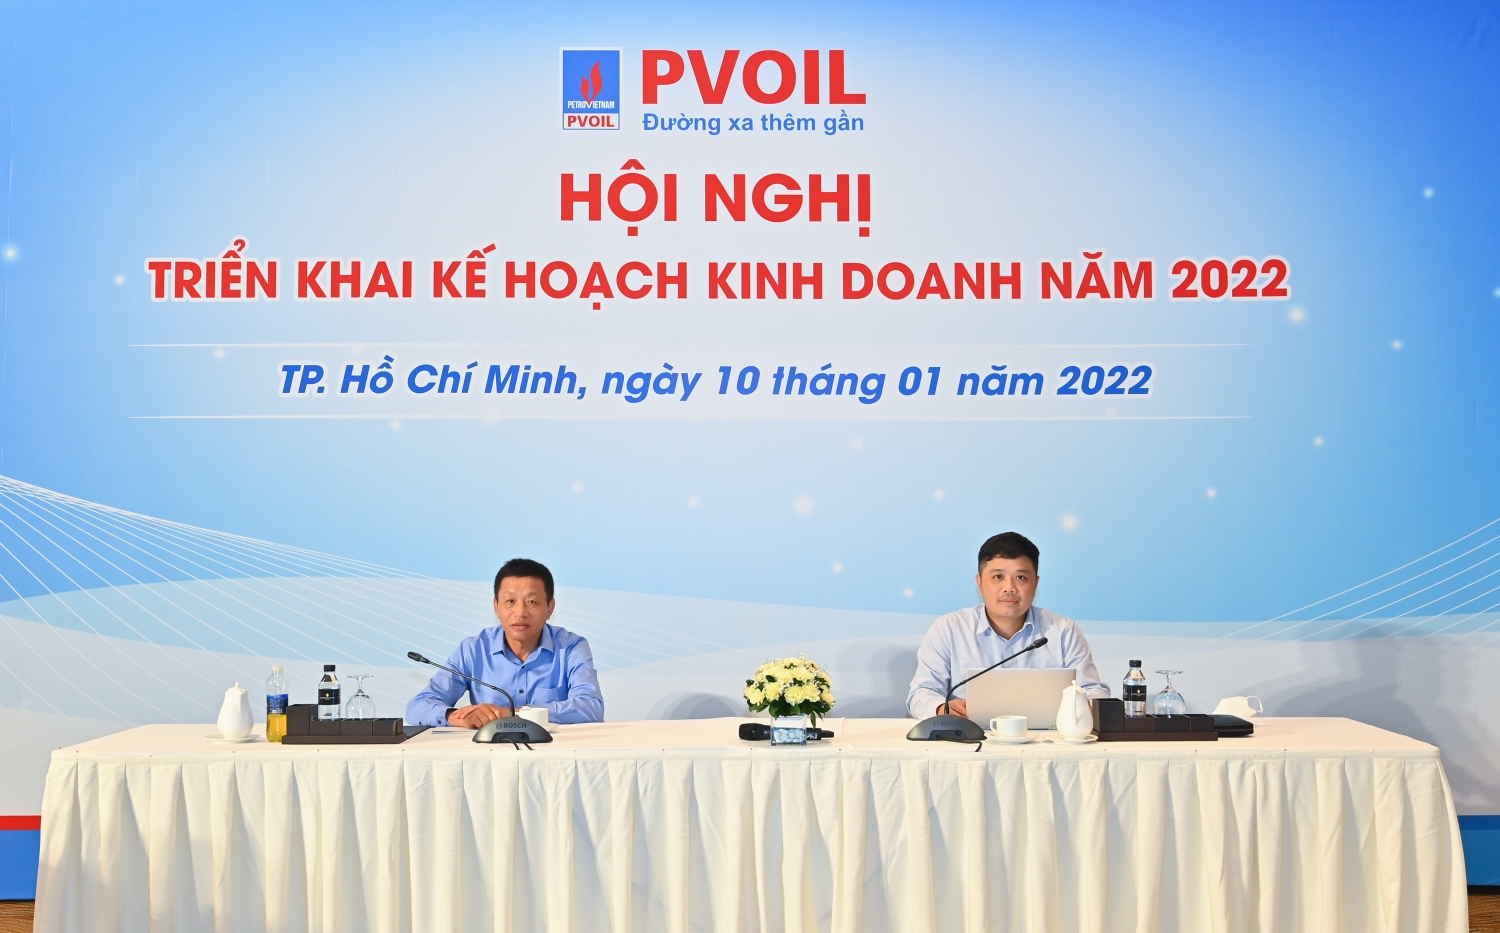 PVOIL hướng đến nhiều mục tiêu ứng dụng chuyển đổi số trong kế hoạch kinh doanh năm 2022”